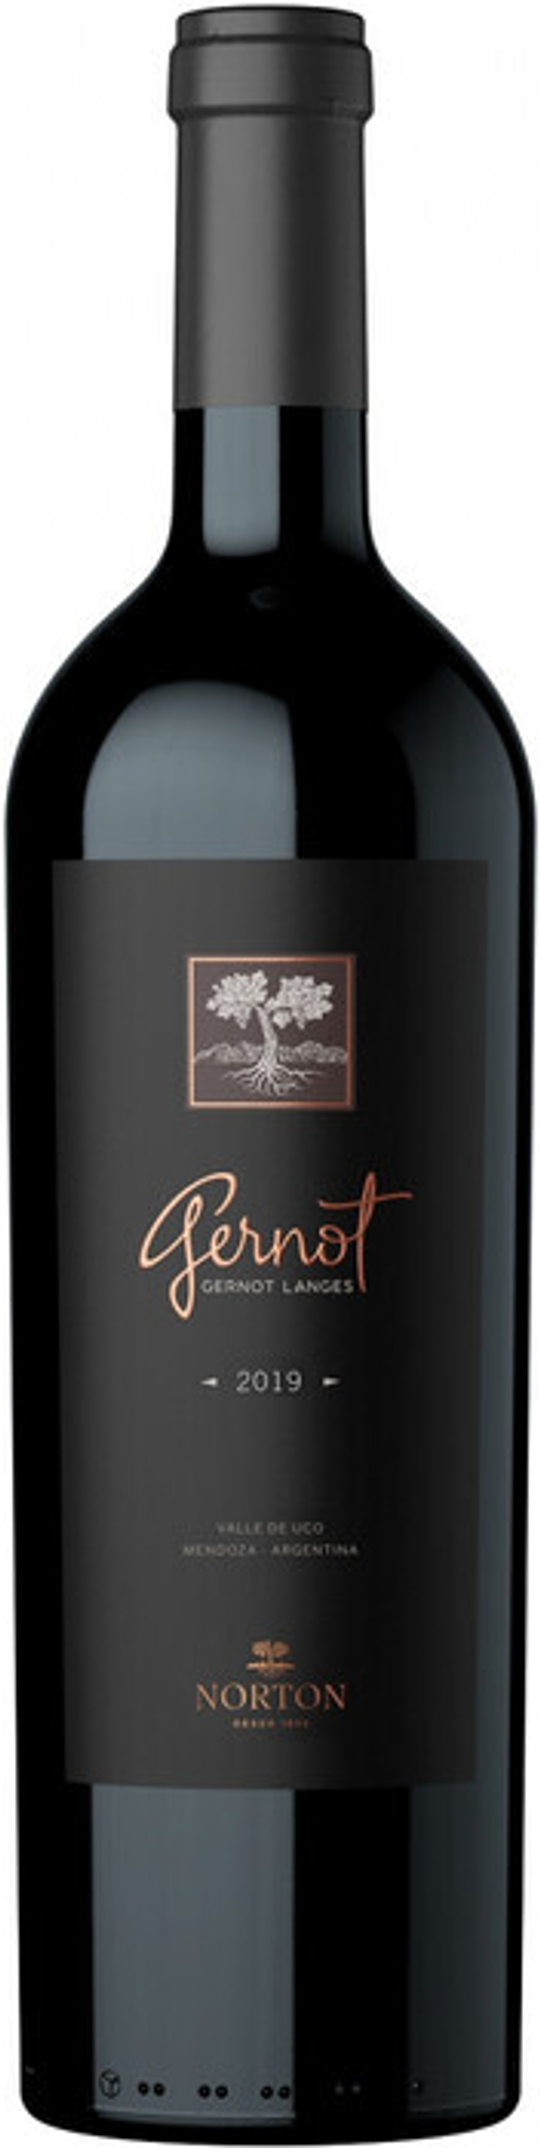 Вино Norton Gernot, 0,75 л.